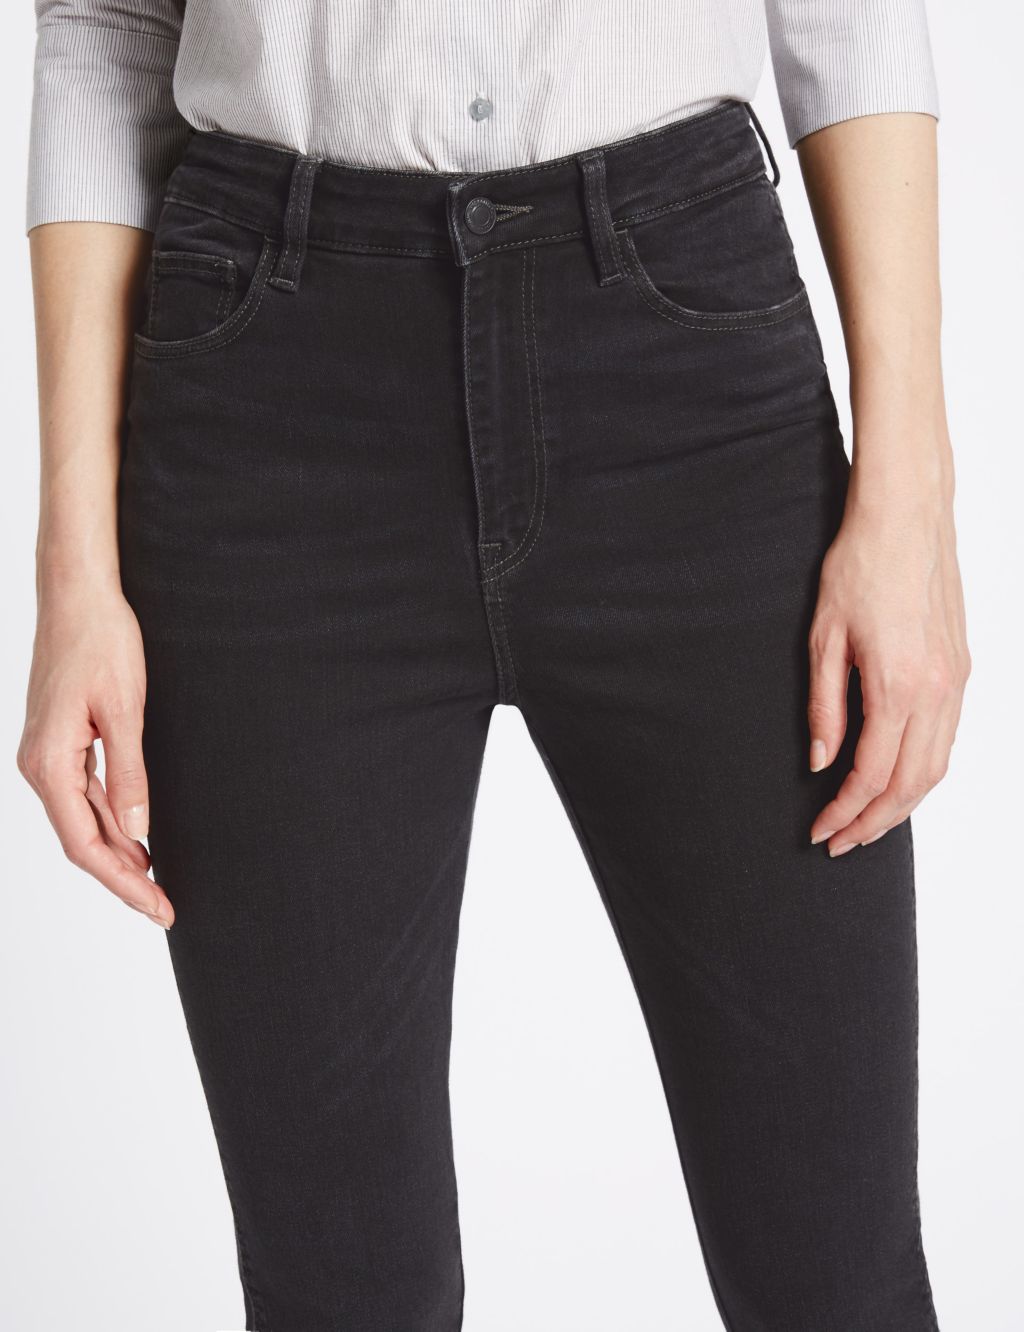 Skinny jeans with frayed hem finish - PV24SN90411113